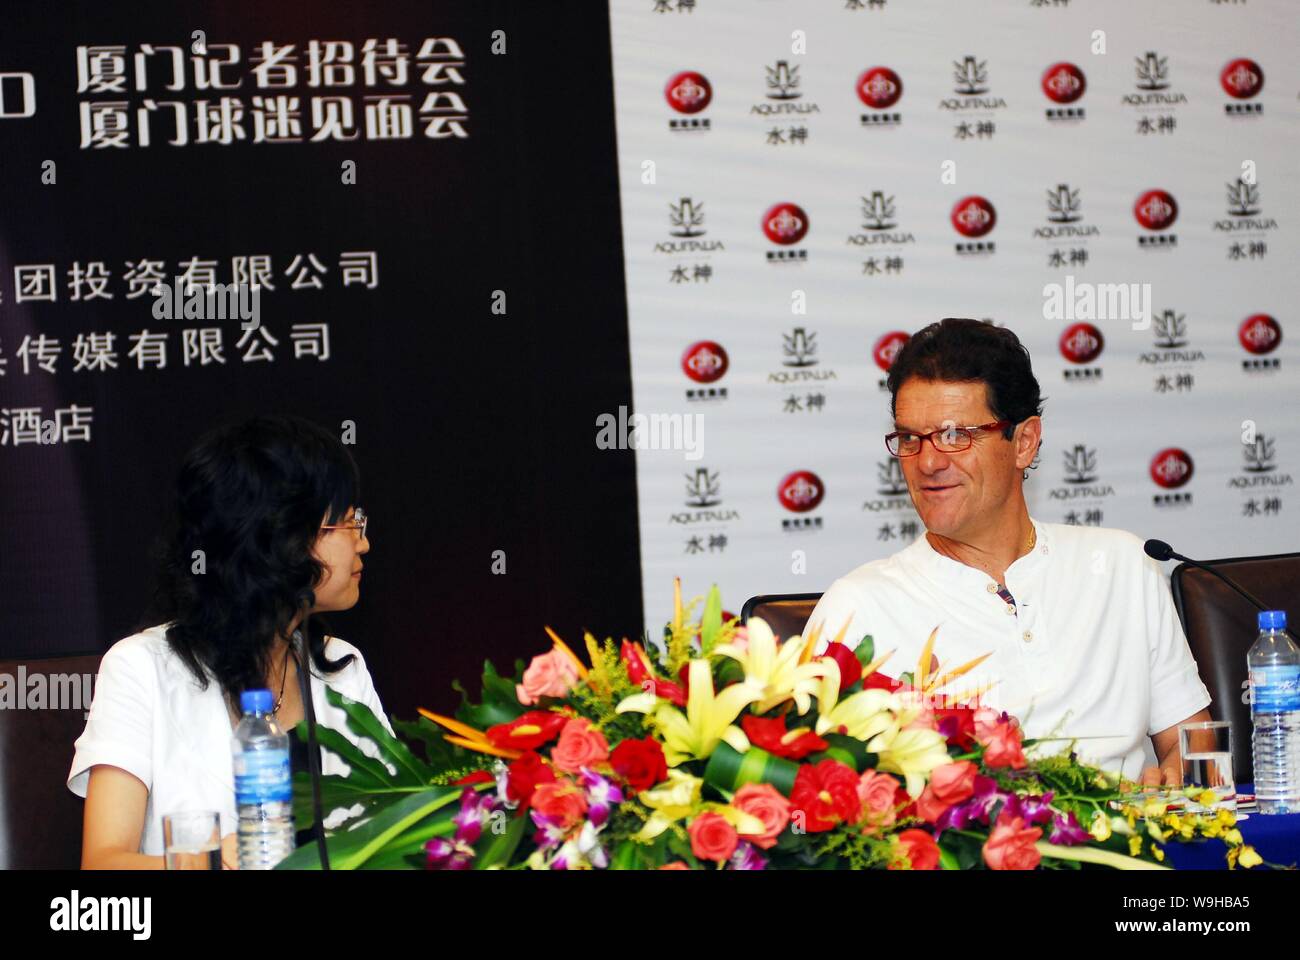 Real Madrid Football Club entraîneur en chef Fabio Capello au cours d'une réunion avec les fans de football chinois à Xiamen, Chine du sud-est de la province de Fujian 27 juin 200 Banque D'Images